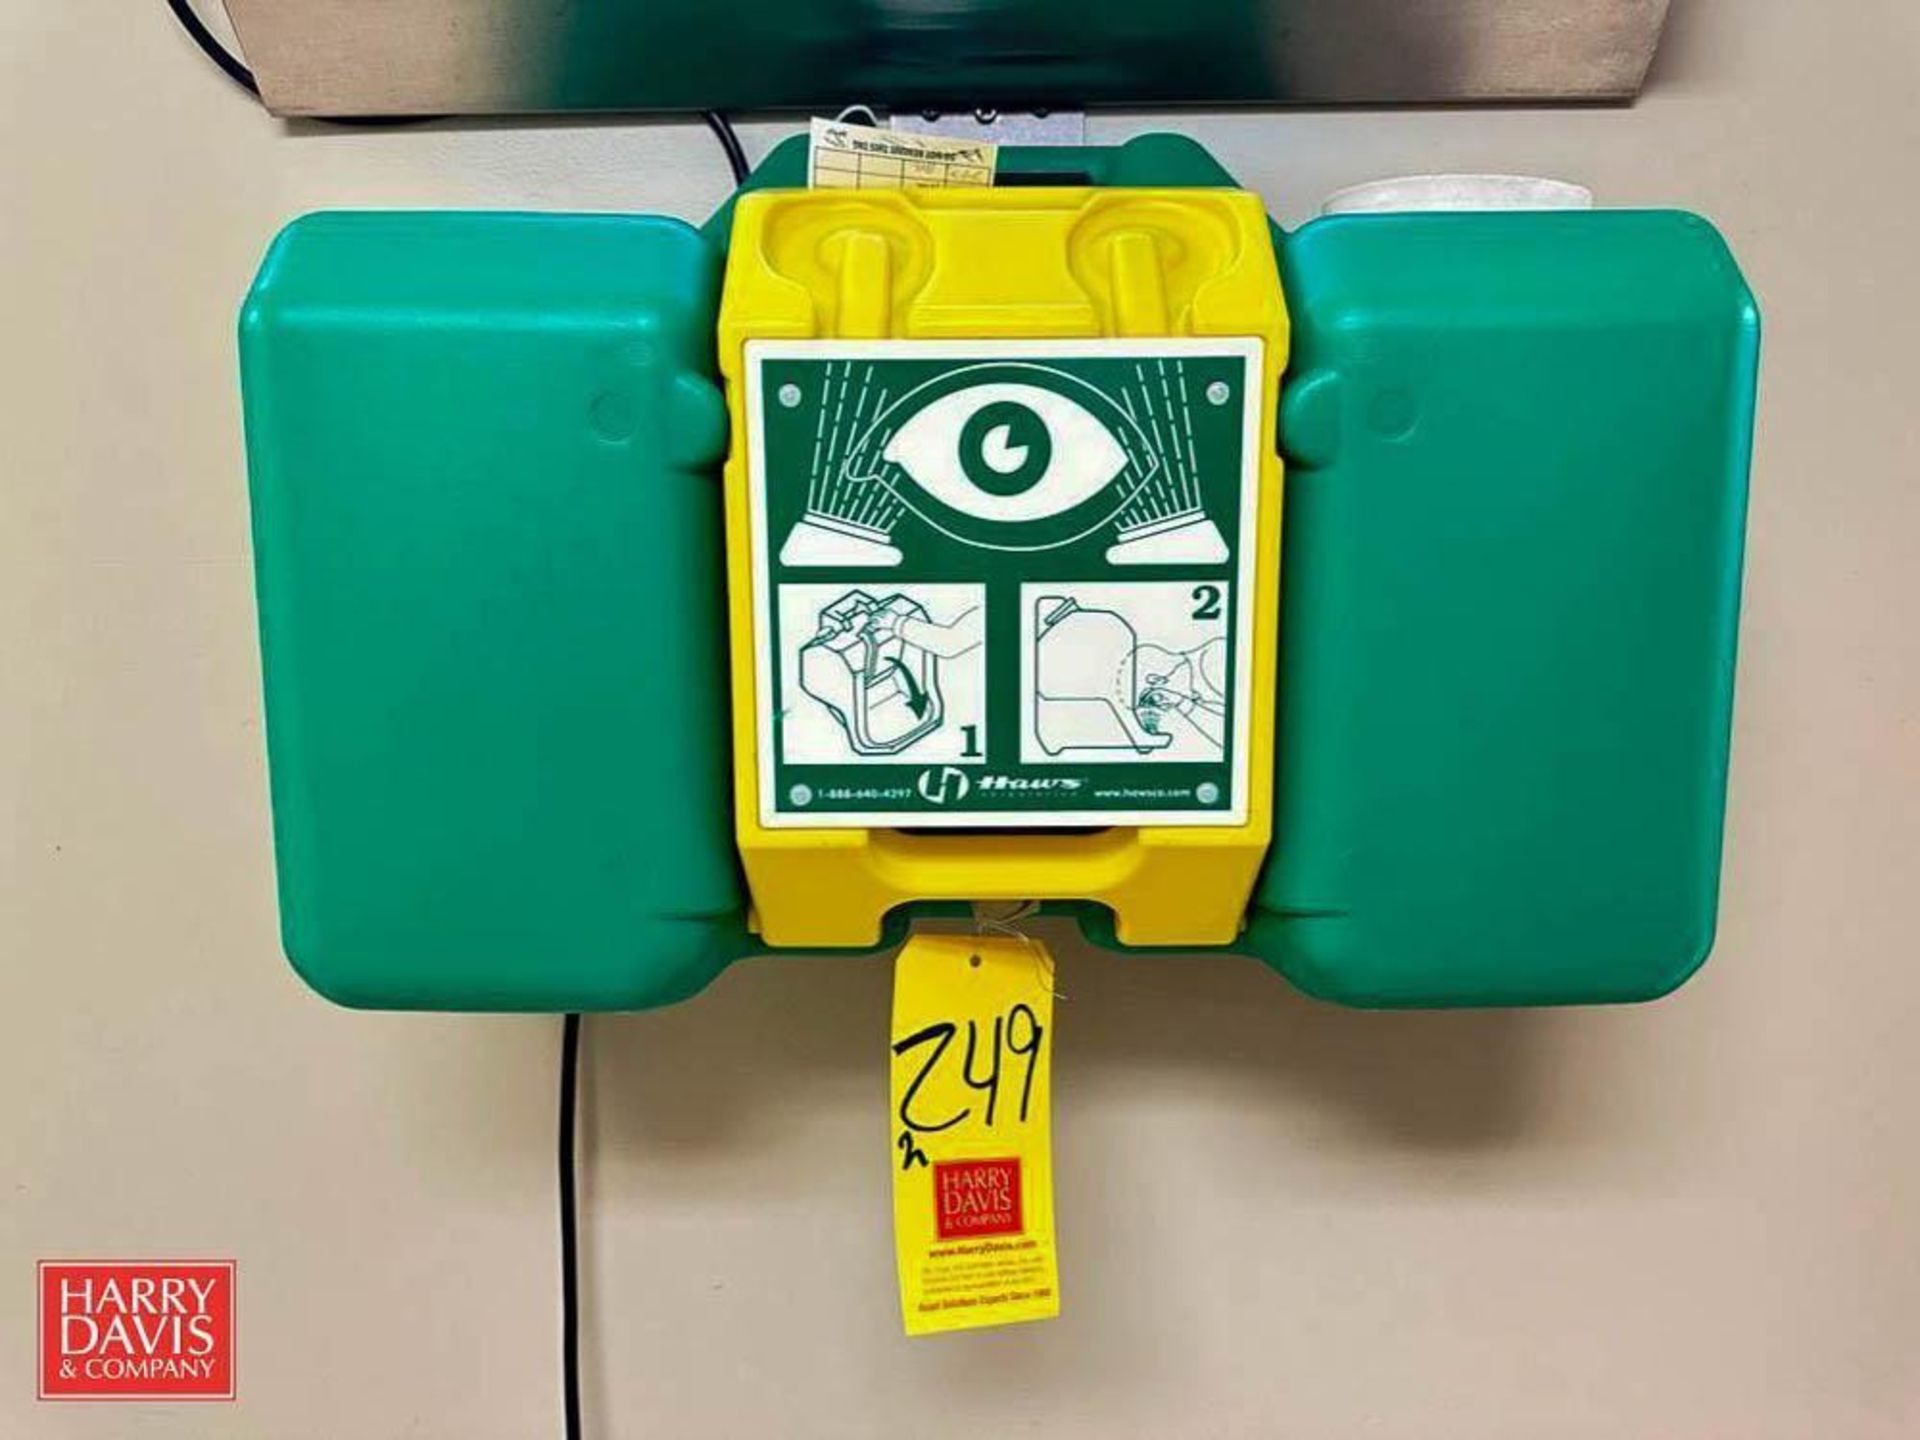 (2) Haws Wall-Mounted Emergency Eye Wash Stations - Rigging Fee: $50